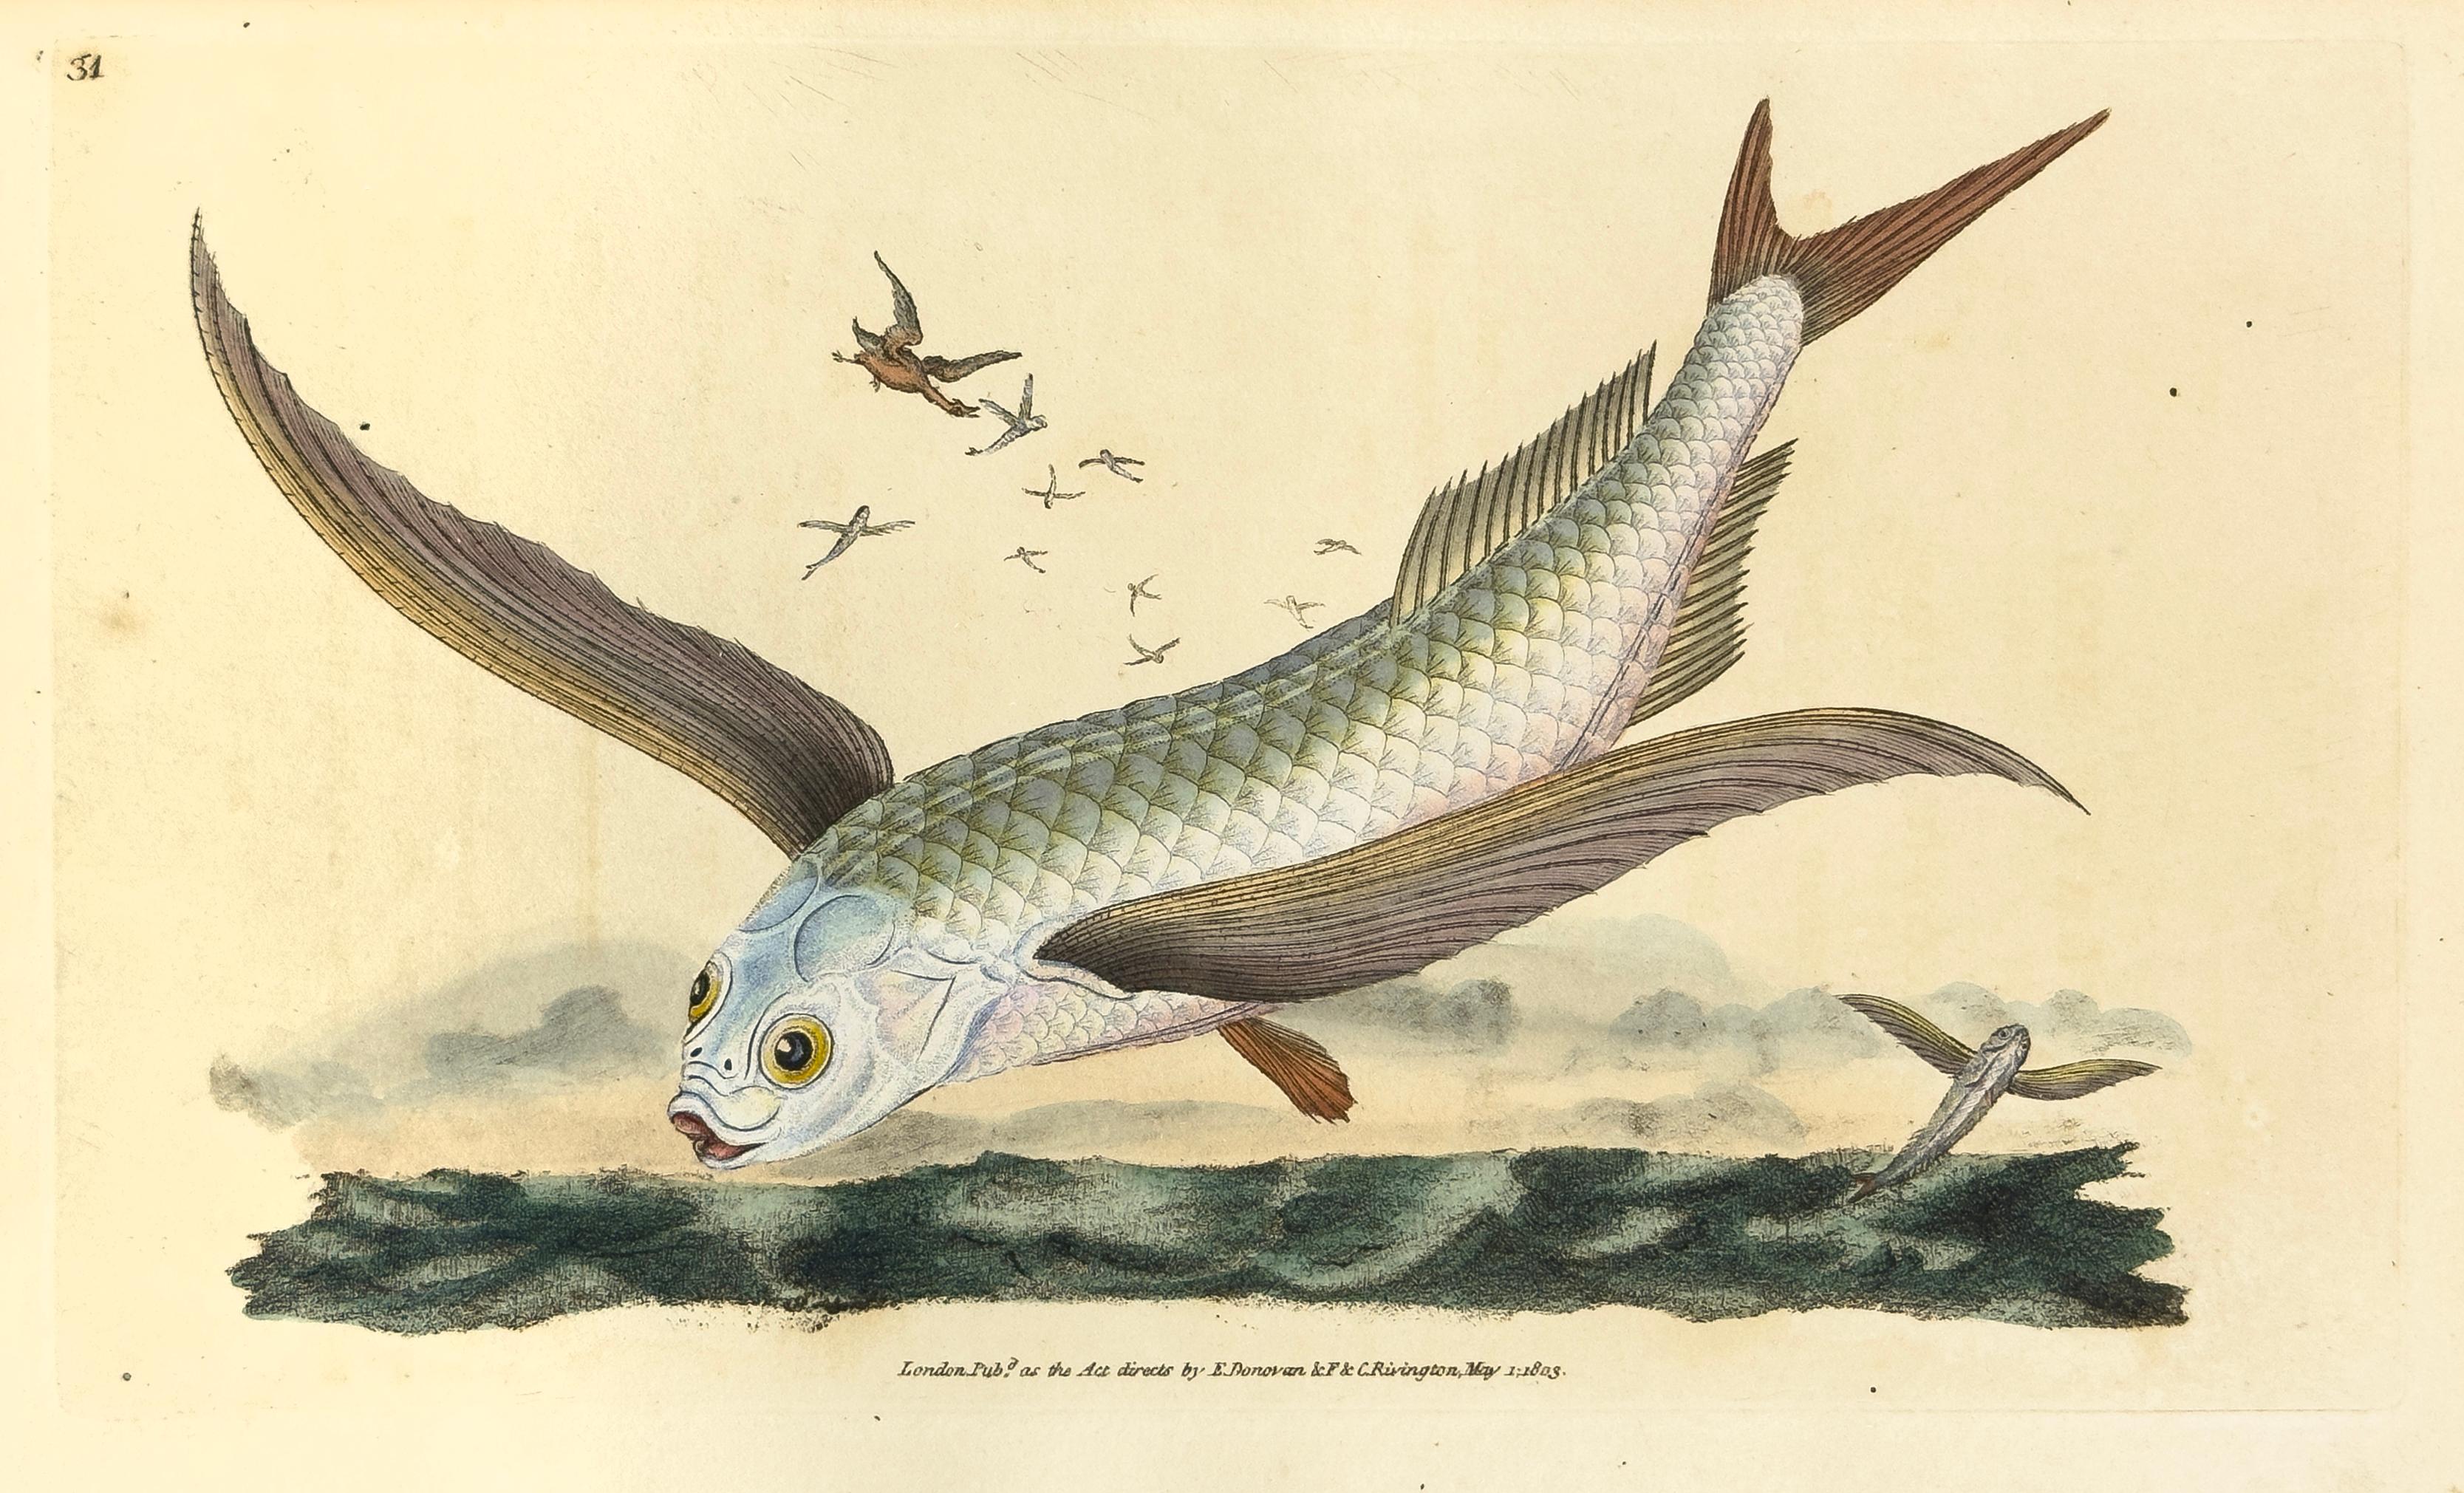 Edward Donovan Animal Print – 31: Exocoetus Volantanen, häufige fliegende Fische